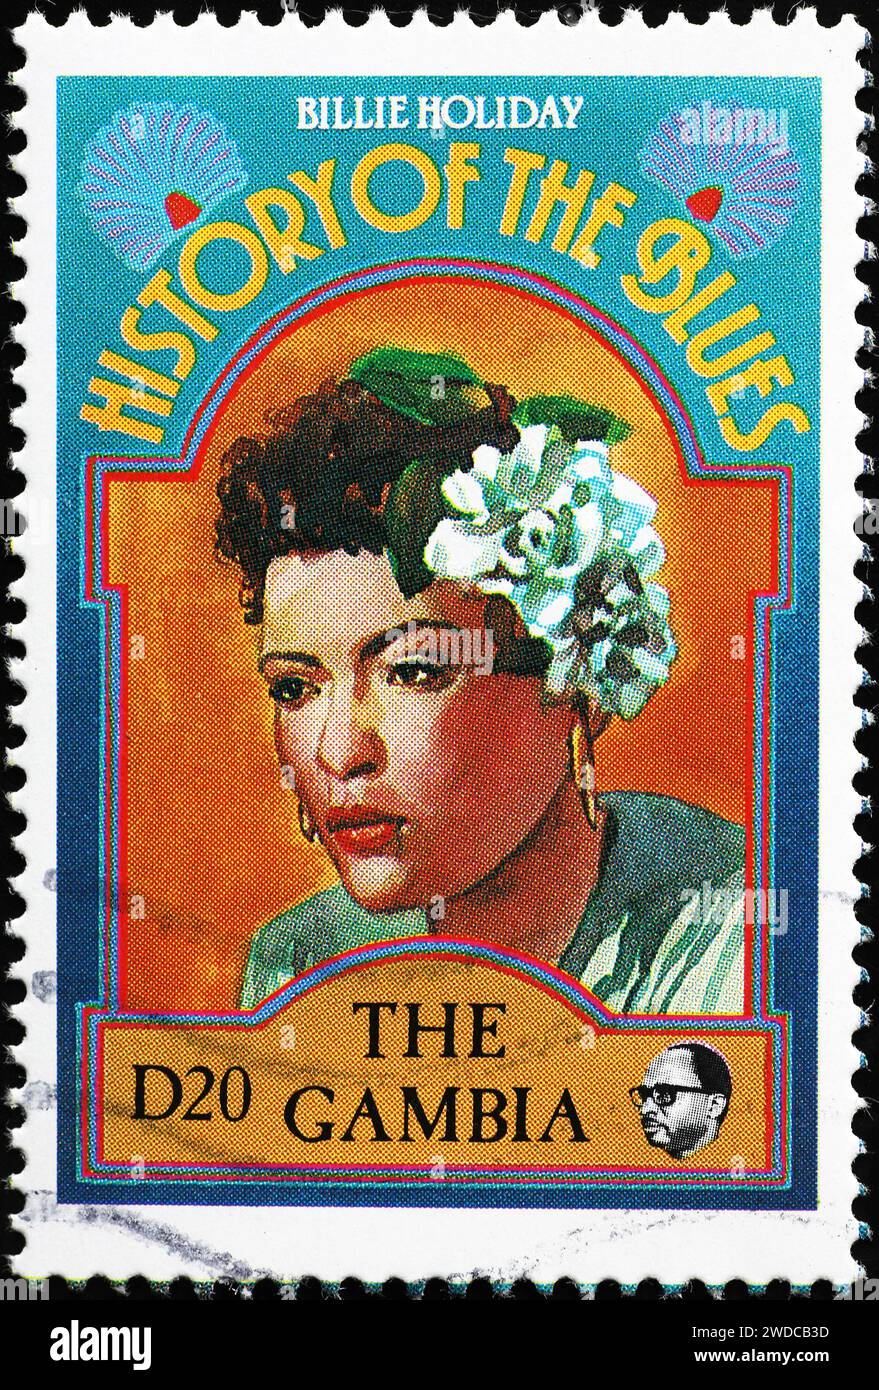 Histoire du Blues, Billie Holiday sur timbre-poste Banque D'Images